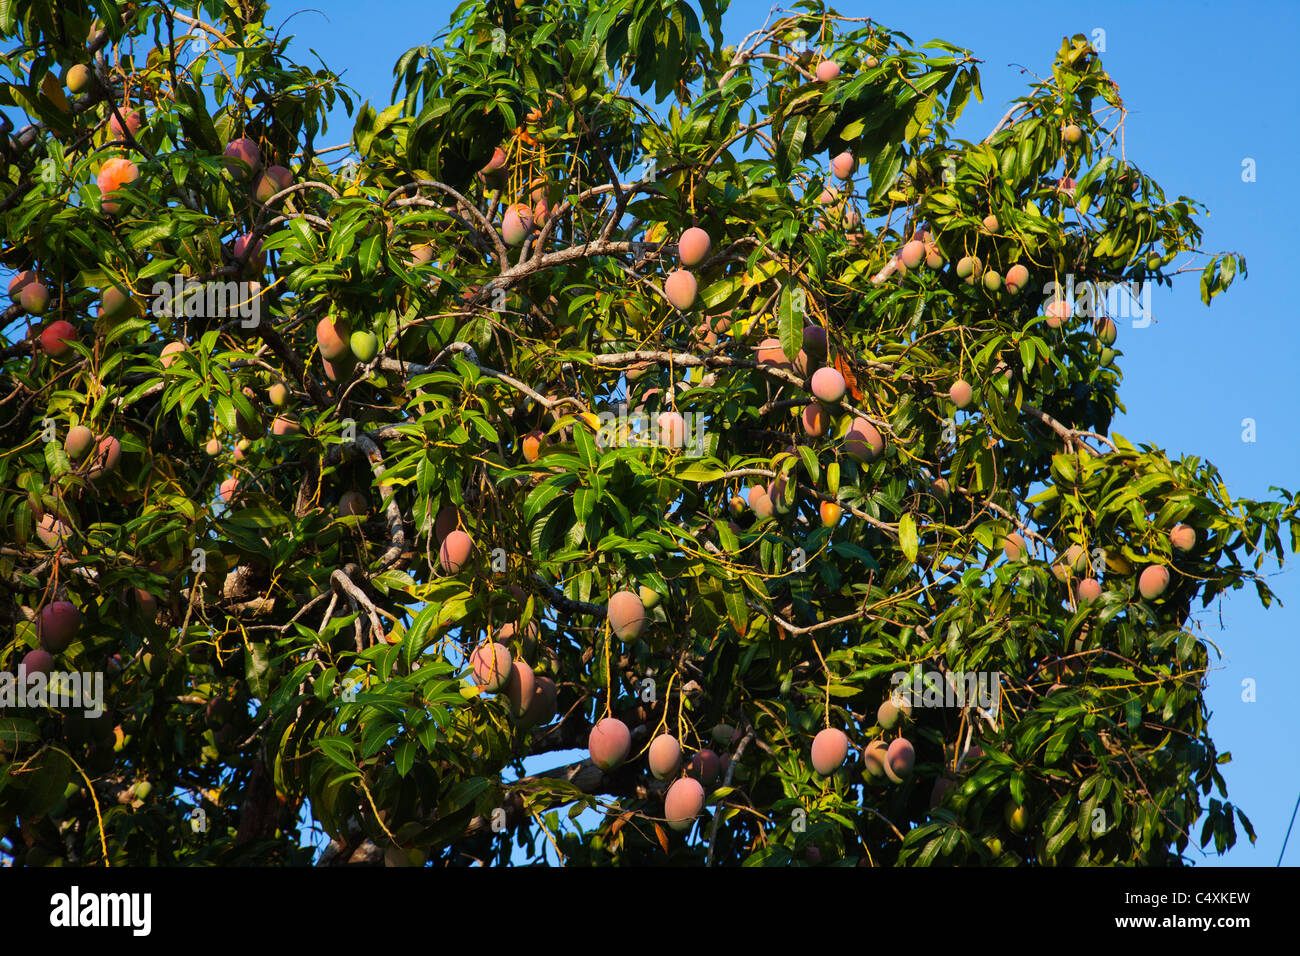 Árbol De Mango Fotos e Imágenes de stock - Alamy